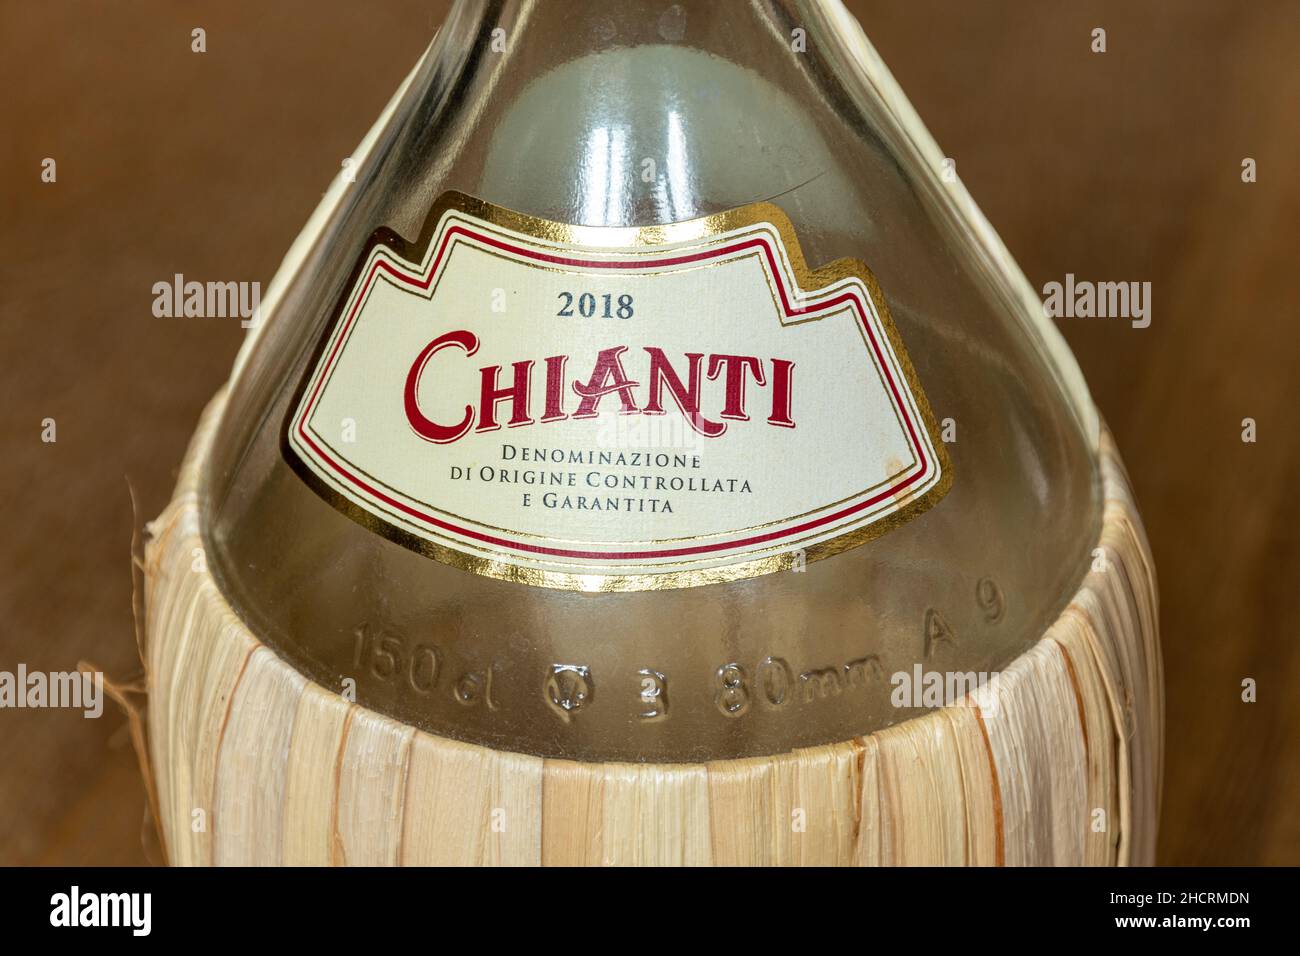 Botella de 2018 Chianti Denominazione di Origine Controllata e Garantita encerrada en una cesta de paja, llamada fiasco Foto de stock